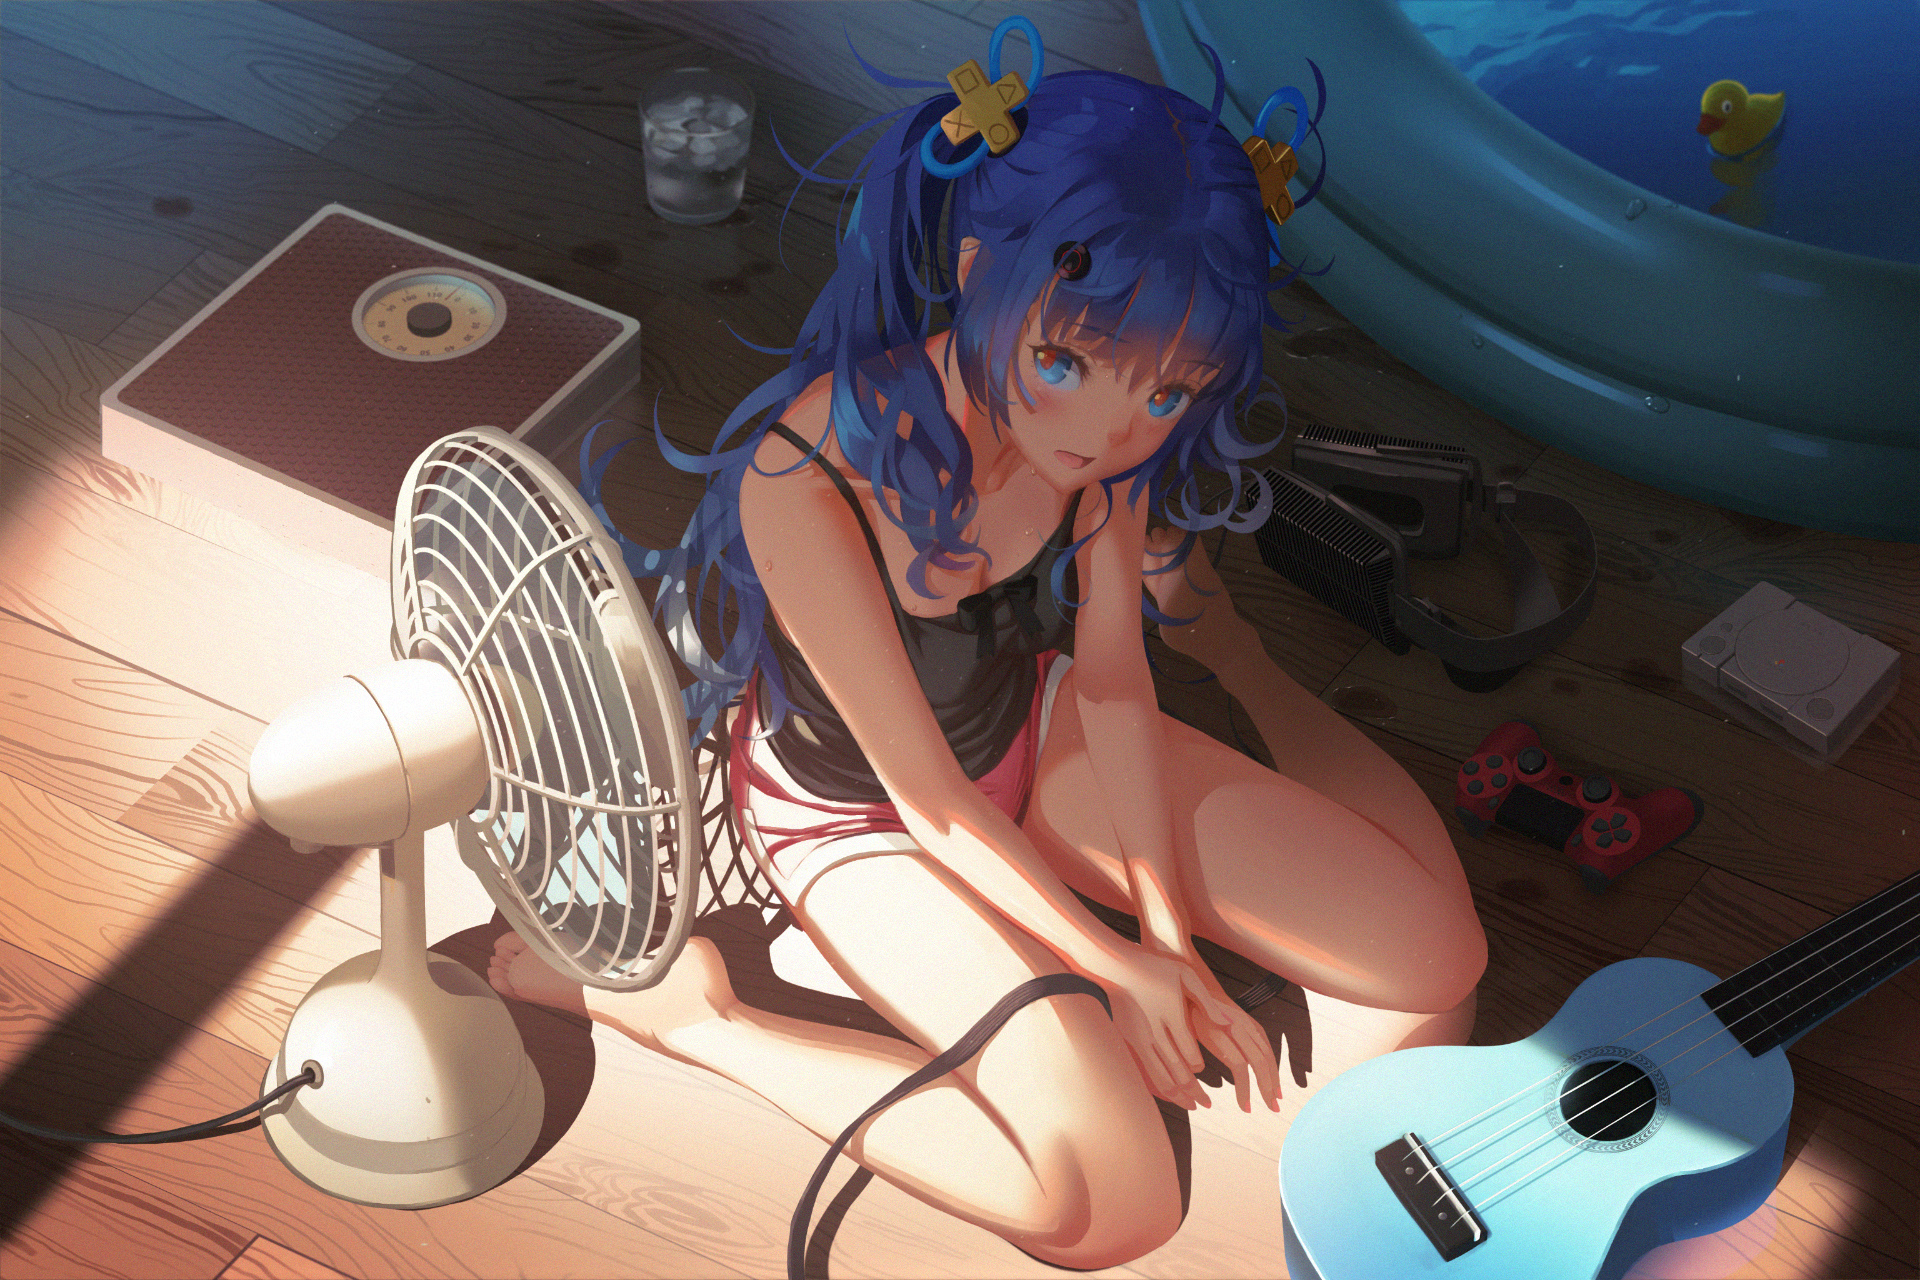 Anime 1920x1280 blue eyes blue hair anime anime girls guitar fans short shorts kneeling artwork vofan